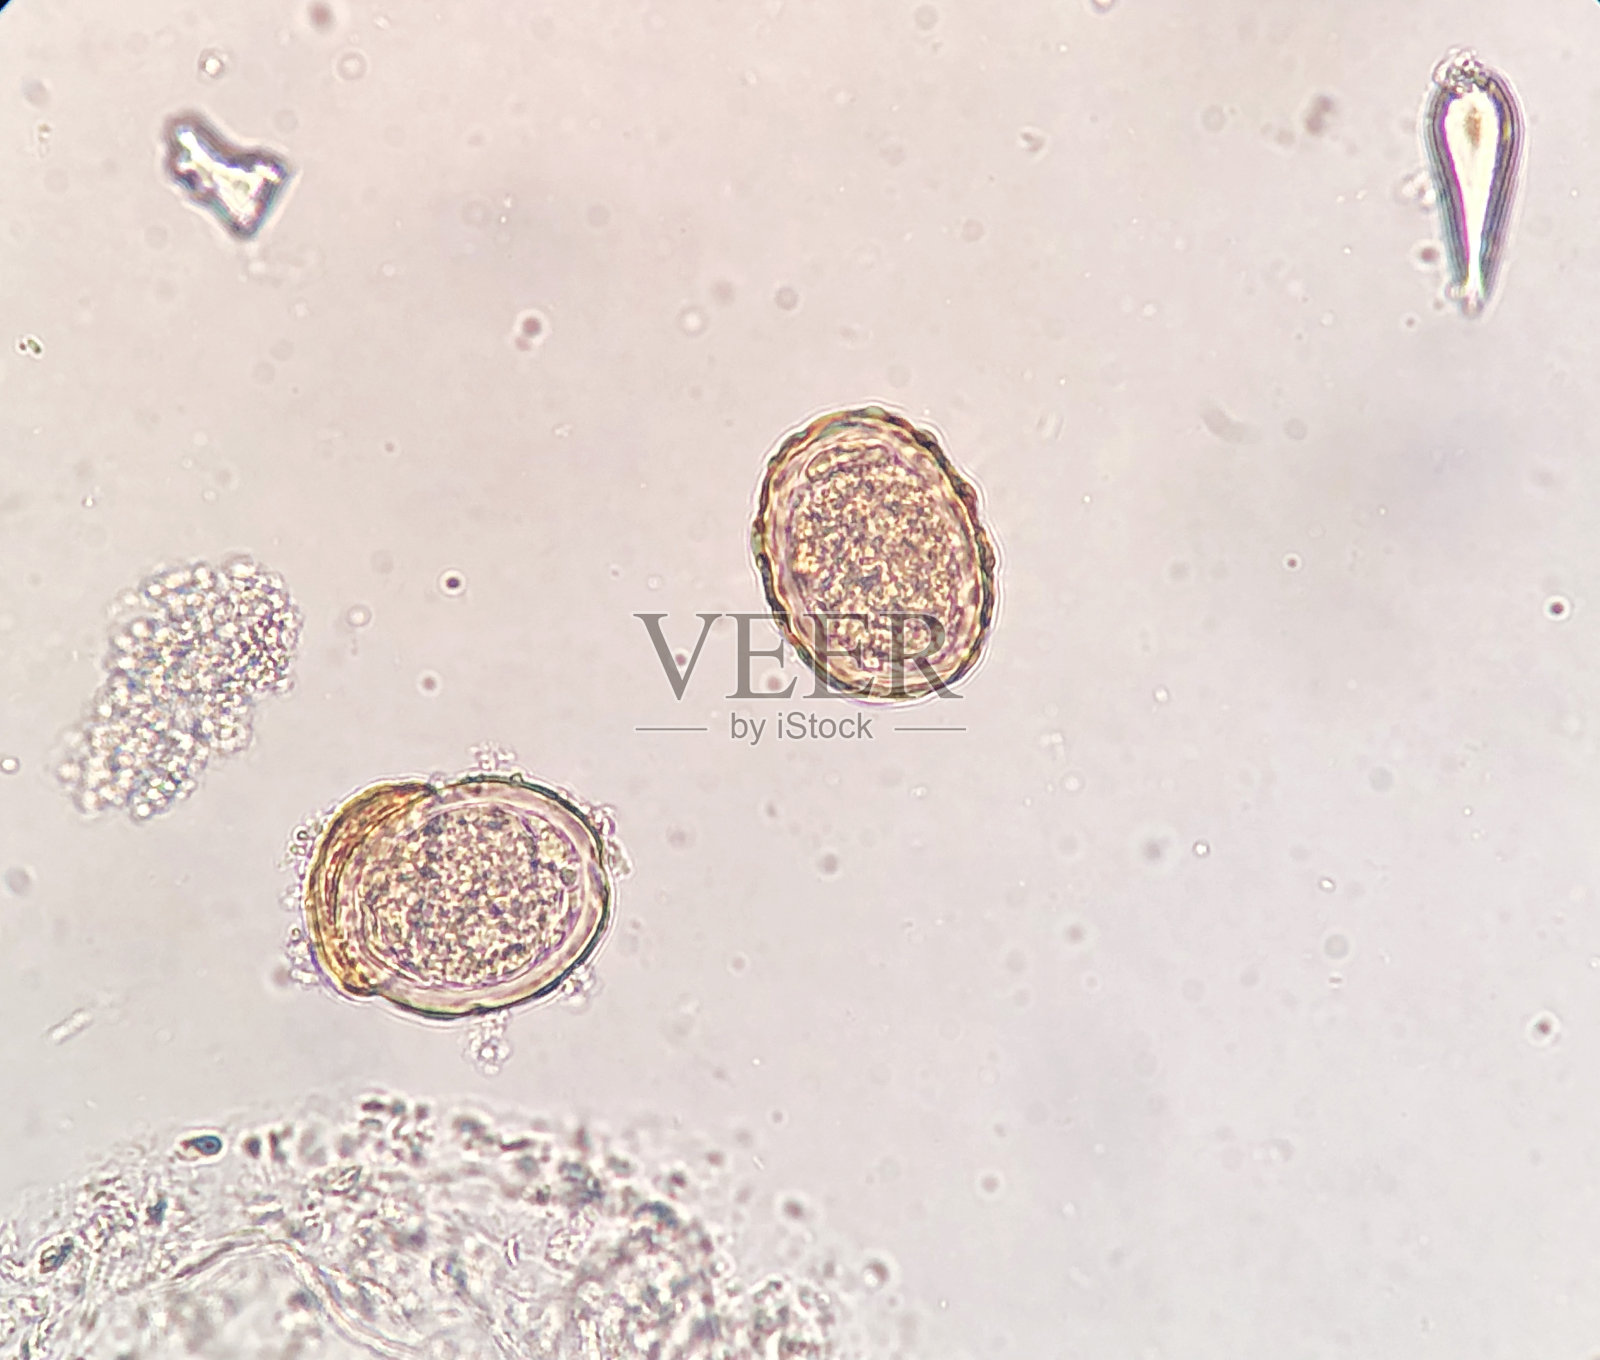 [题][图]常见寄生虫卵显微镜下实拍图（检验职称考试中必考一图）